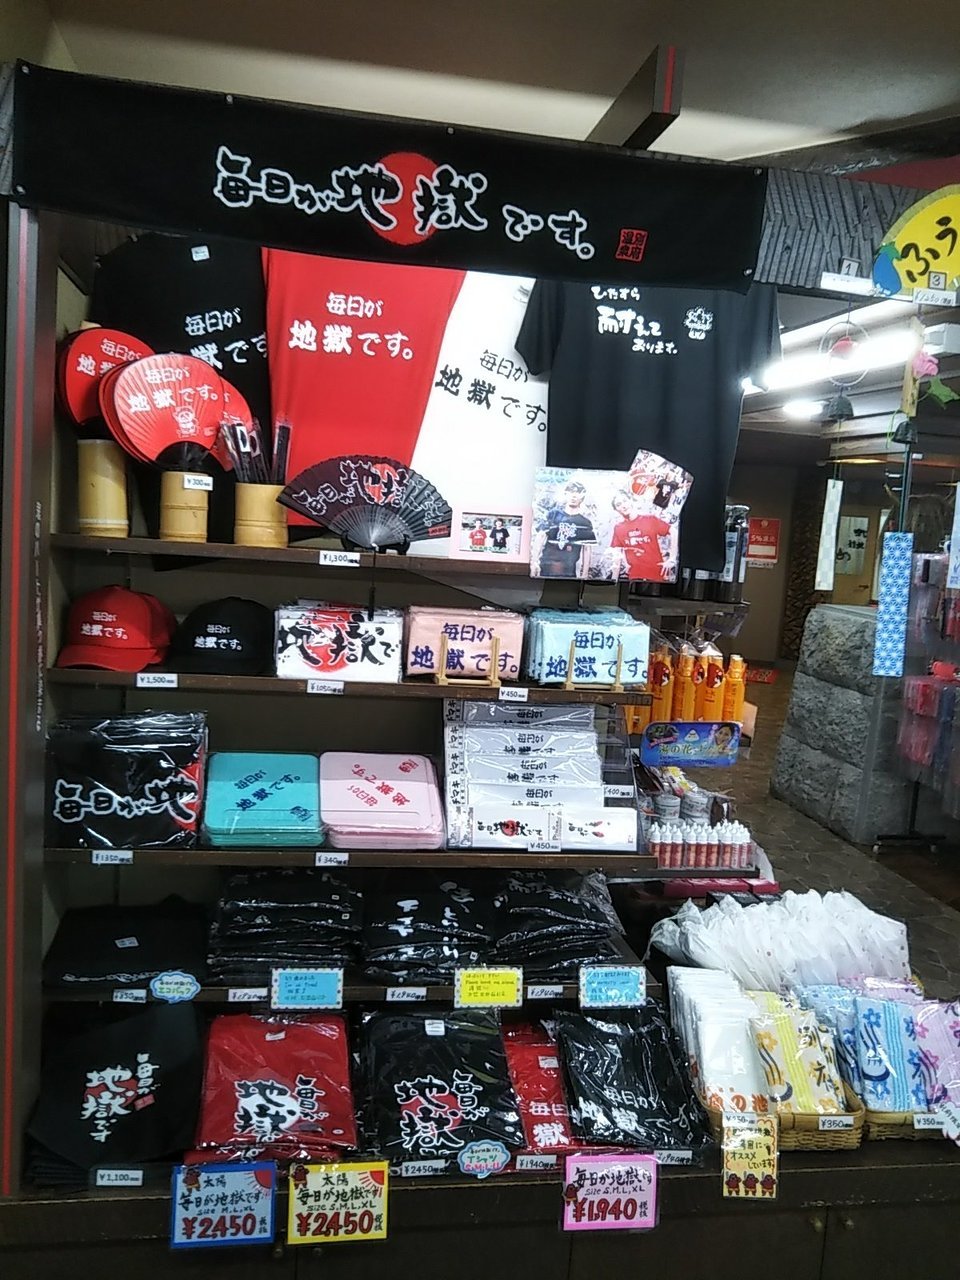 Chi No Ike Jigoku Shop